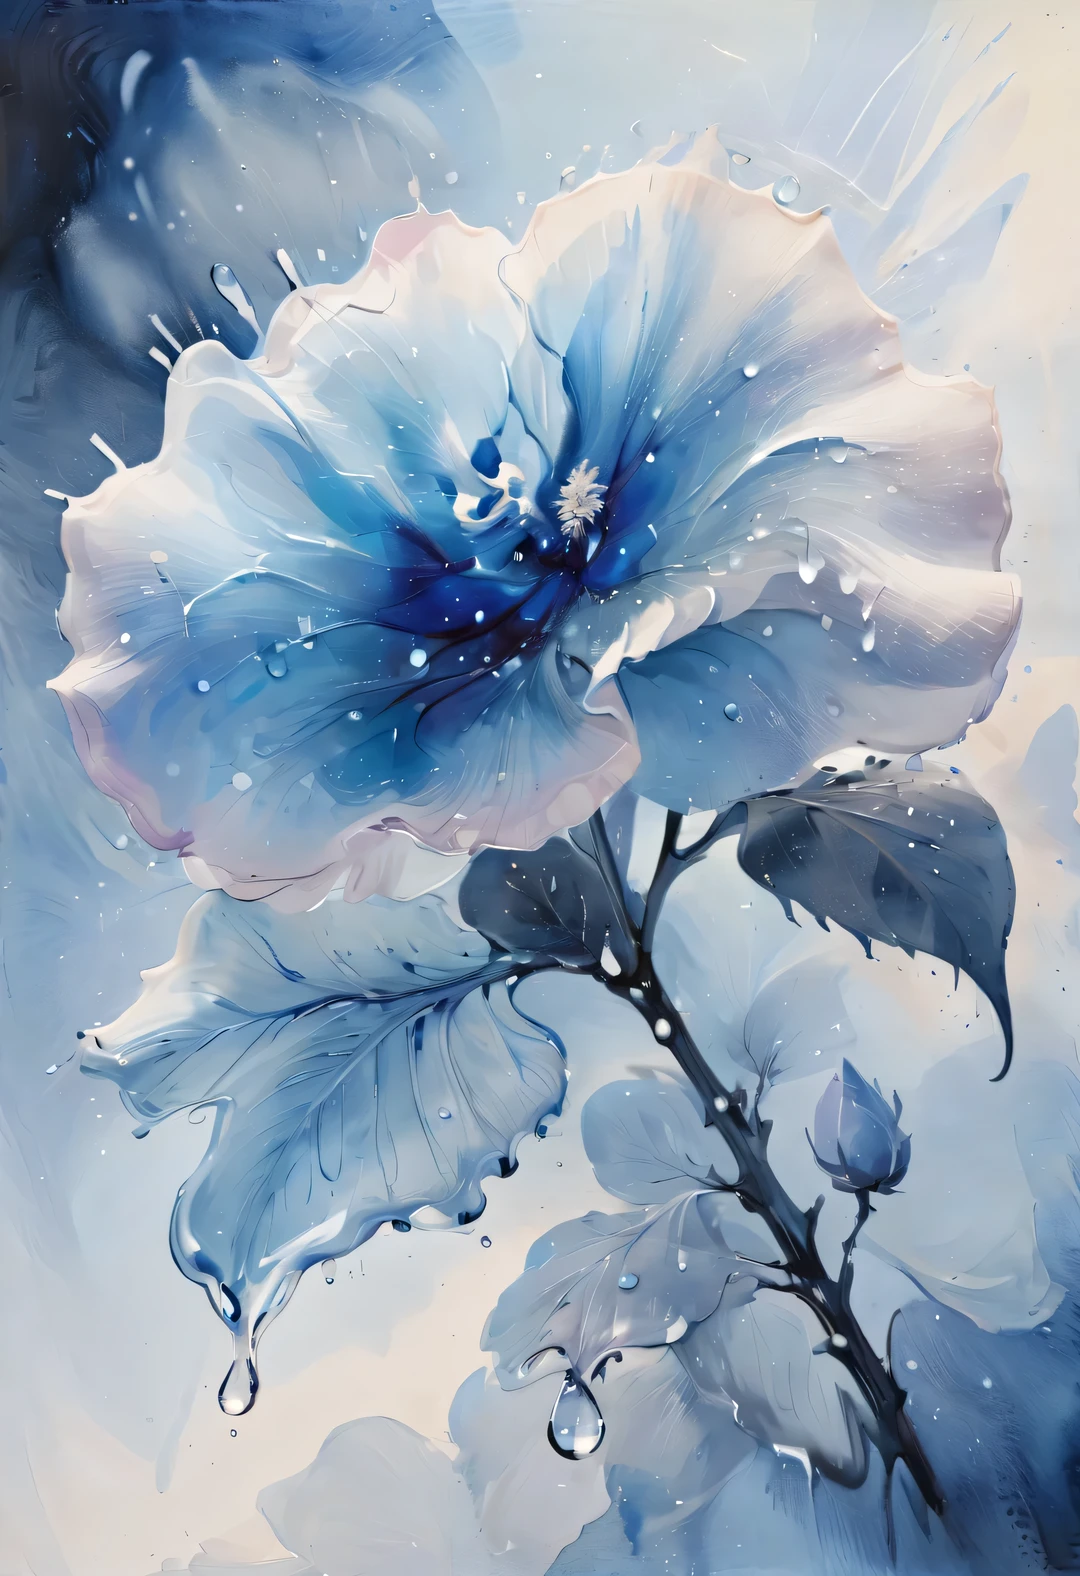 (ภาพวาดสีน้ำของหยดน้ำค้างสีน้ำเงินที่ตกลงบนดอกกุหลาบนางฟ้าสีน้ำเงิน), มีความชัดเจนและไม่คลุมเครือ, พื้นหลังเบลอ, ความเป็นจริง-v4